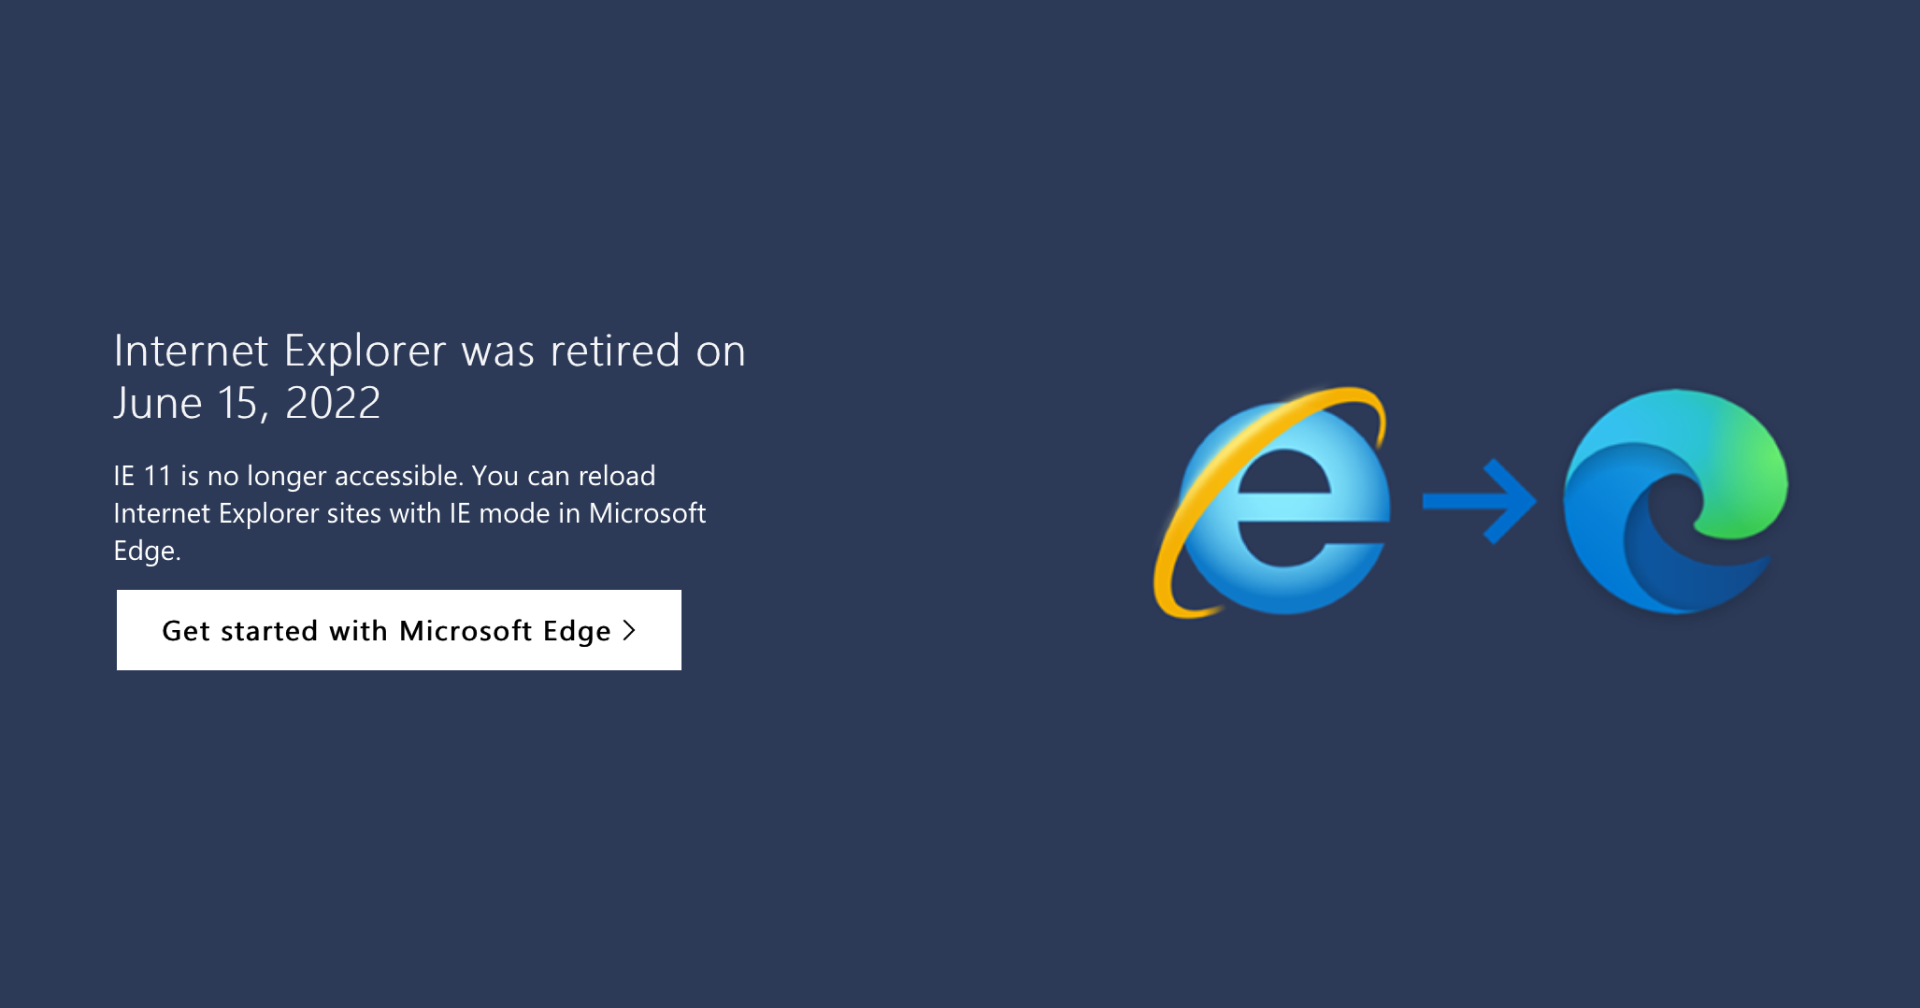 เมื่อมีพบก็ต้องมีจากลา ไมโครซอฟท์ส่งอัปเดท Windows 10 ปิดใช้งาน Internet Explorer แล้ว